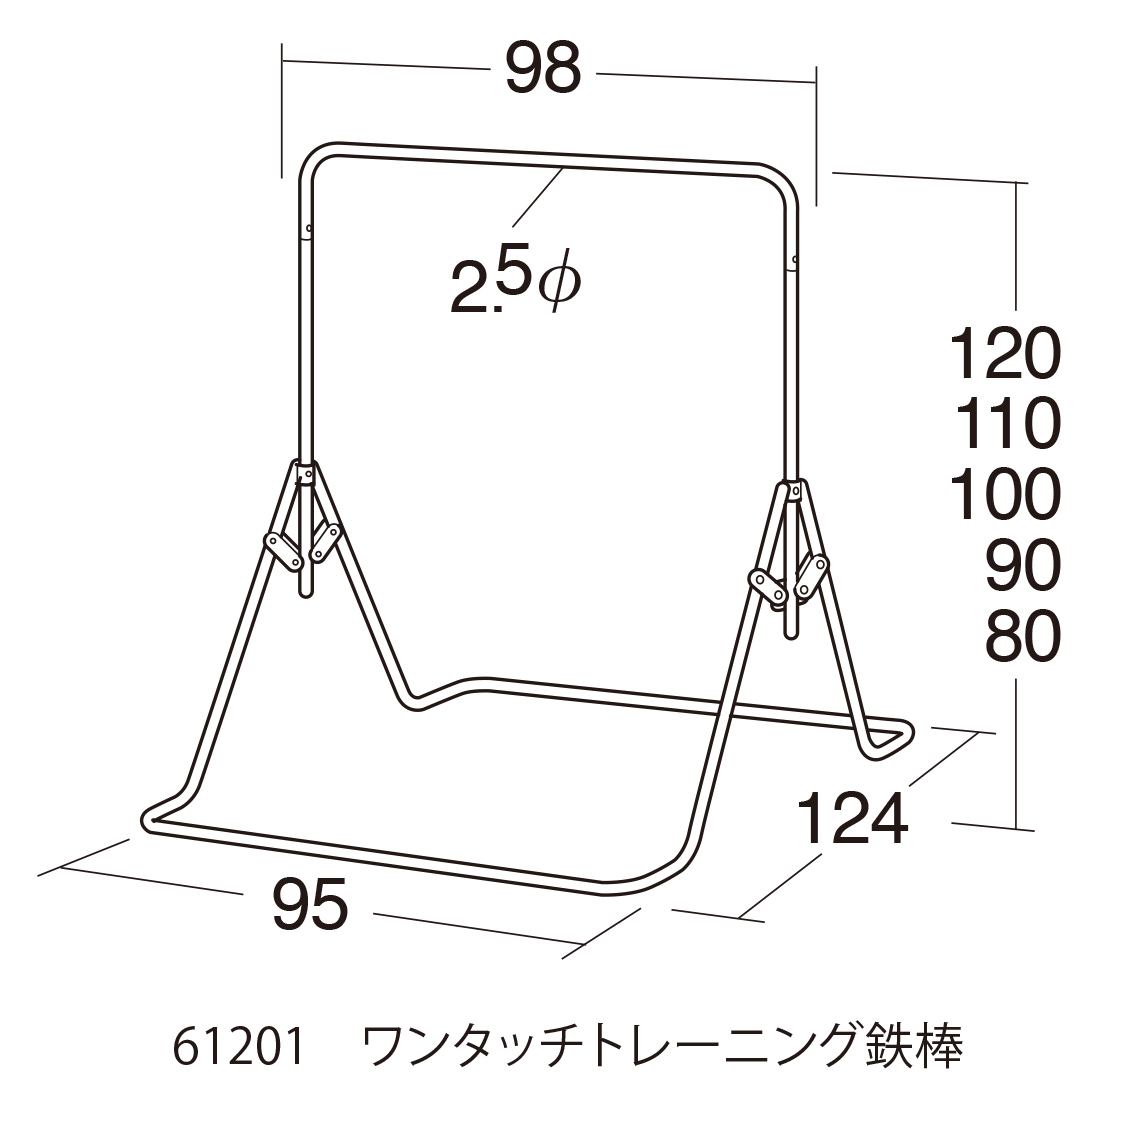 鉄棒 室内鉄棒 日本製 子供用SGマーク付 高さ80cmから こども用鉄棒 室内用折りたたみ式 ワンタッチトレーニング鉄棒 送料無料  ツムラウェブショップ 